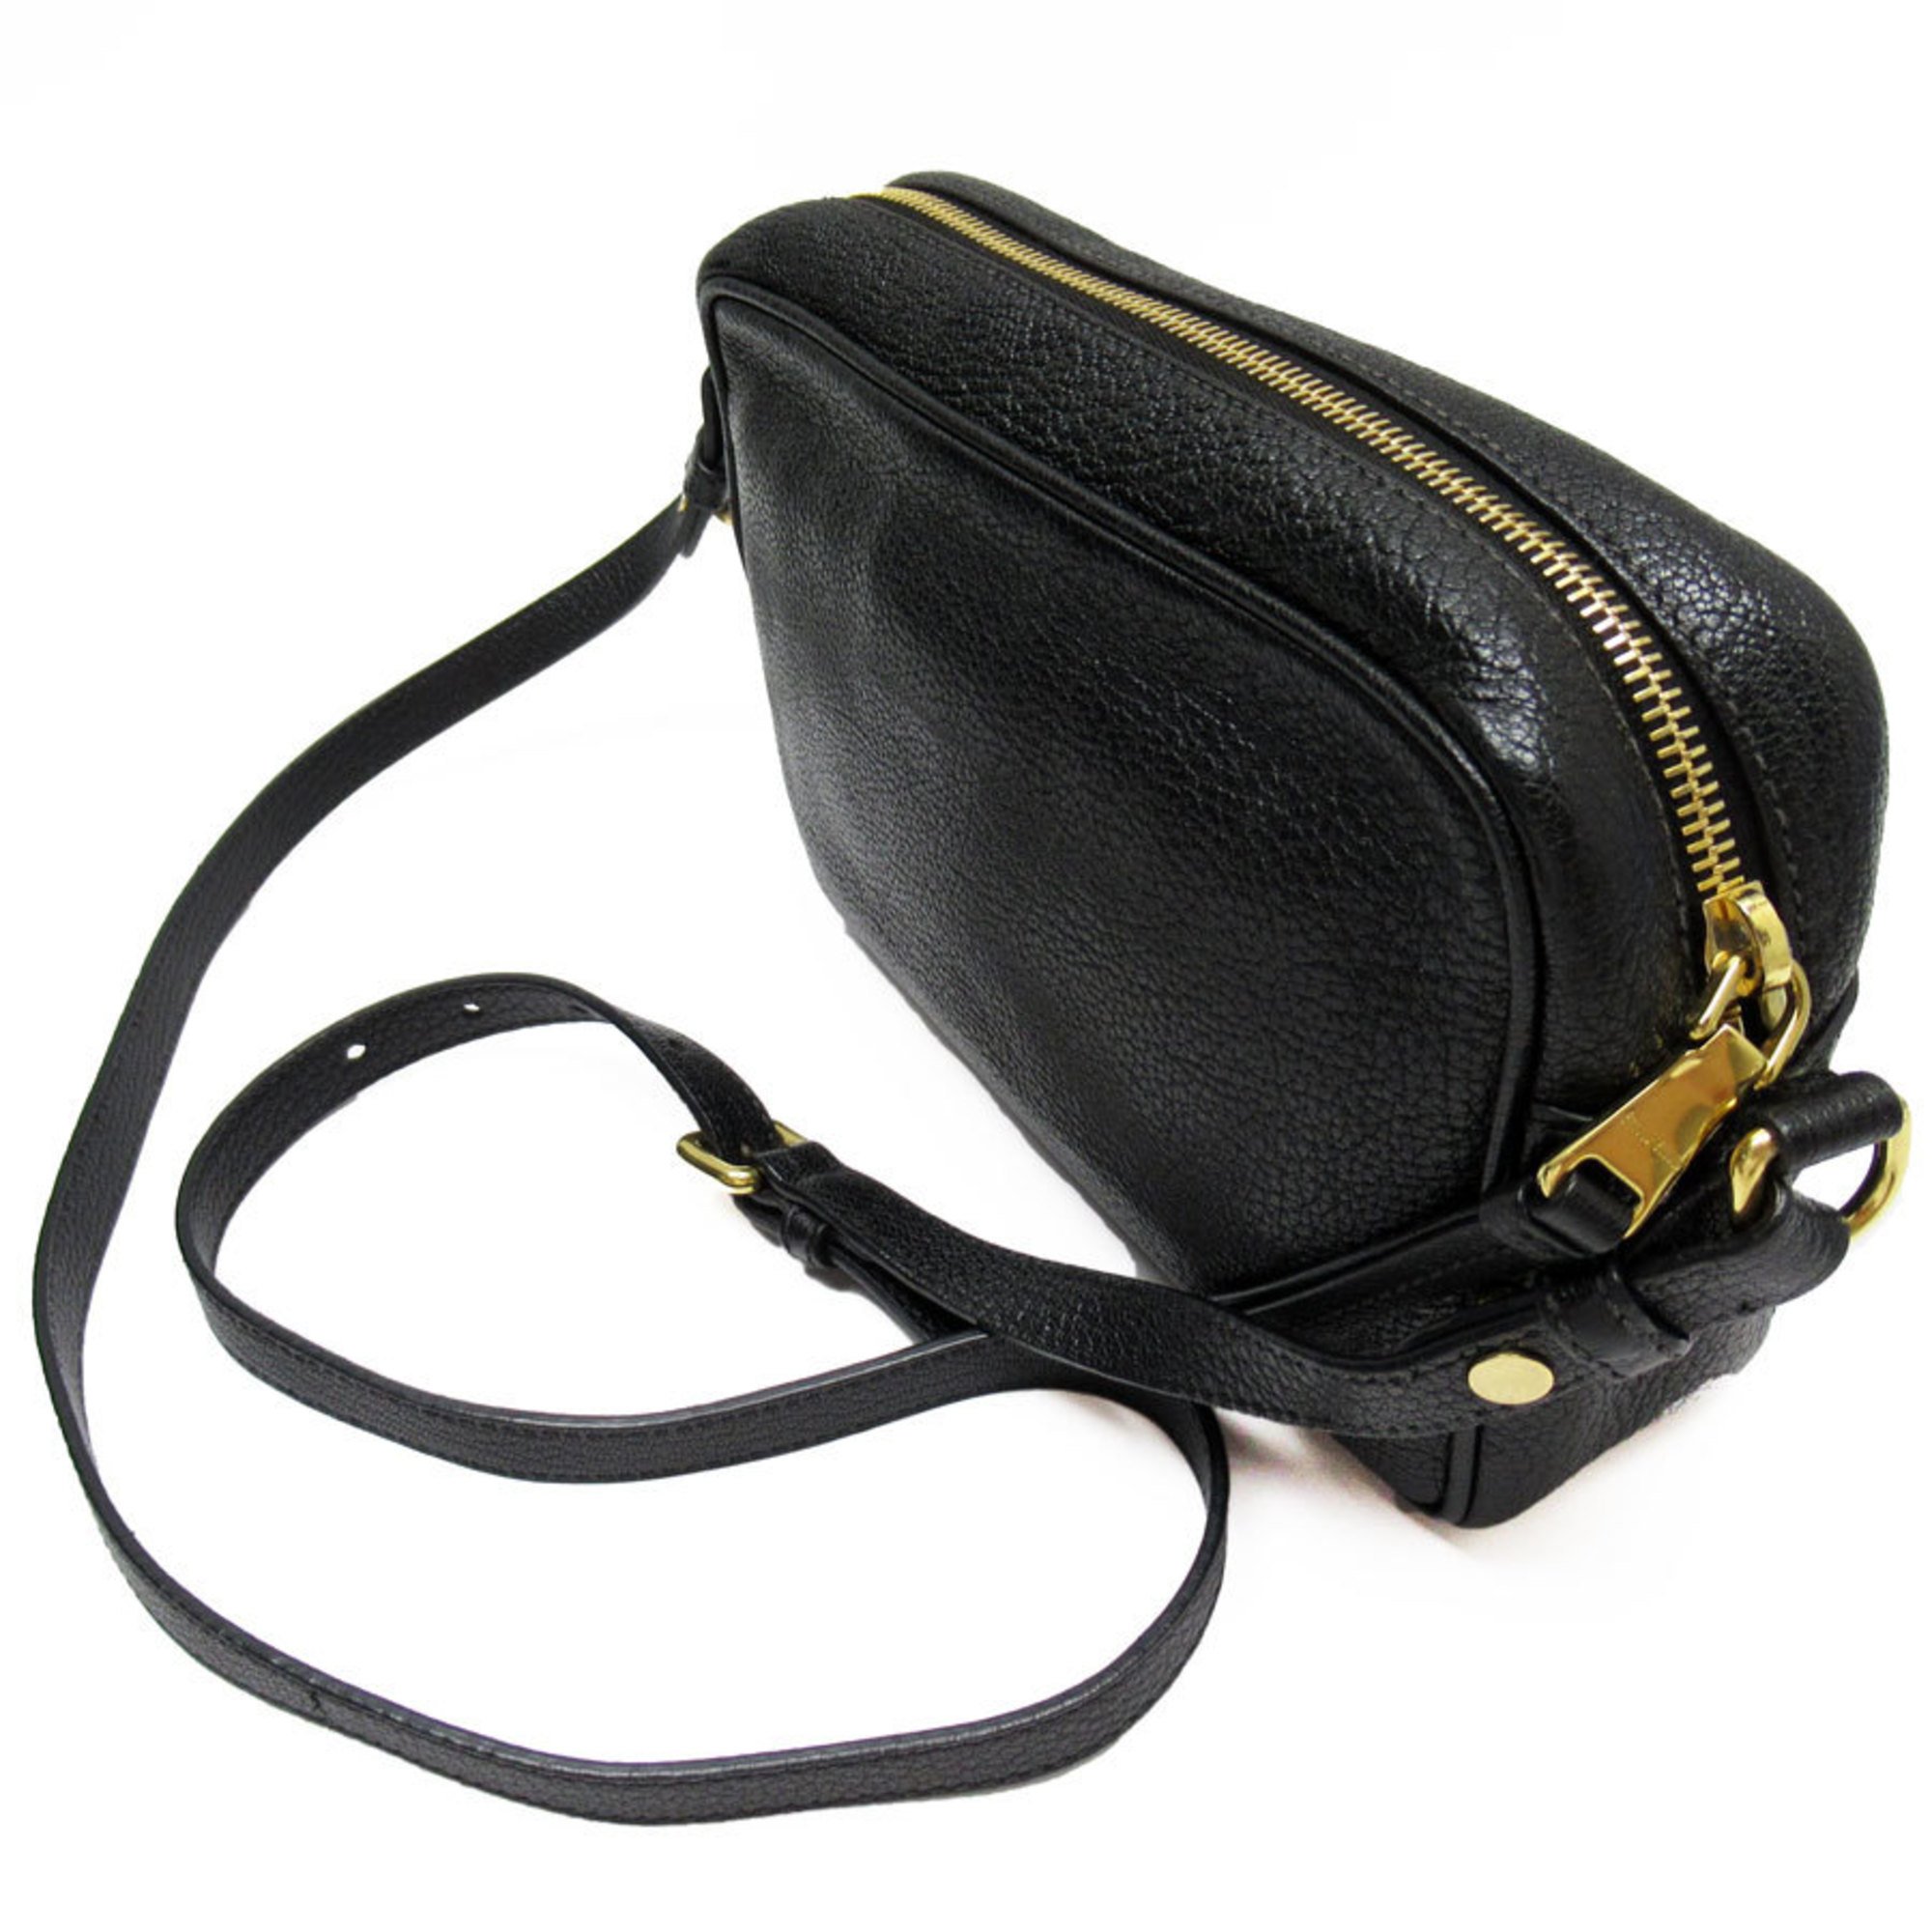 Miu Miu Miu shoulder bag leather black gold ladies w0444a